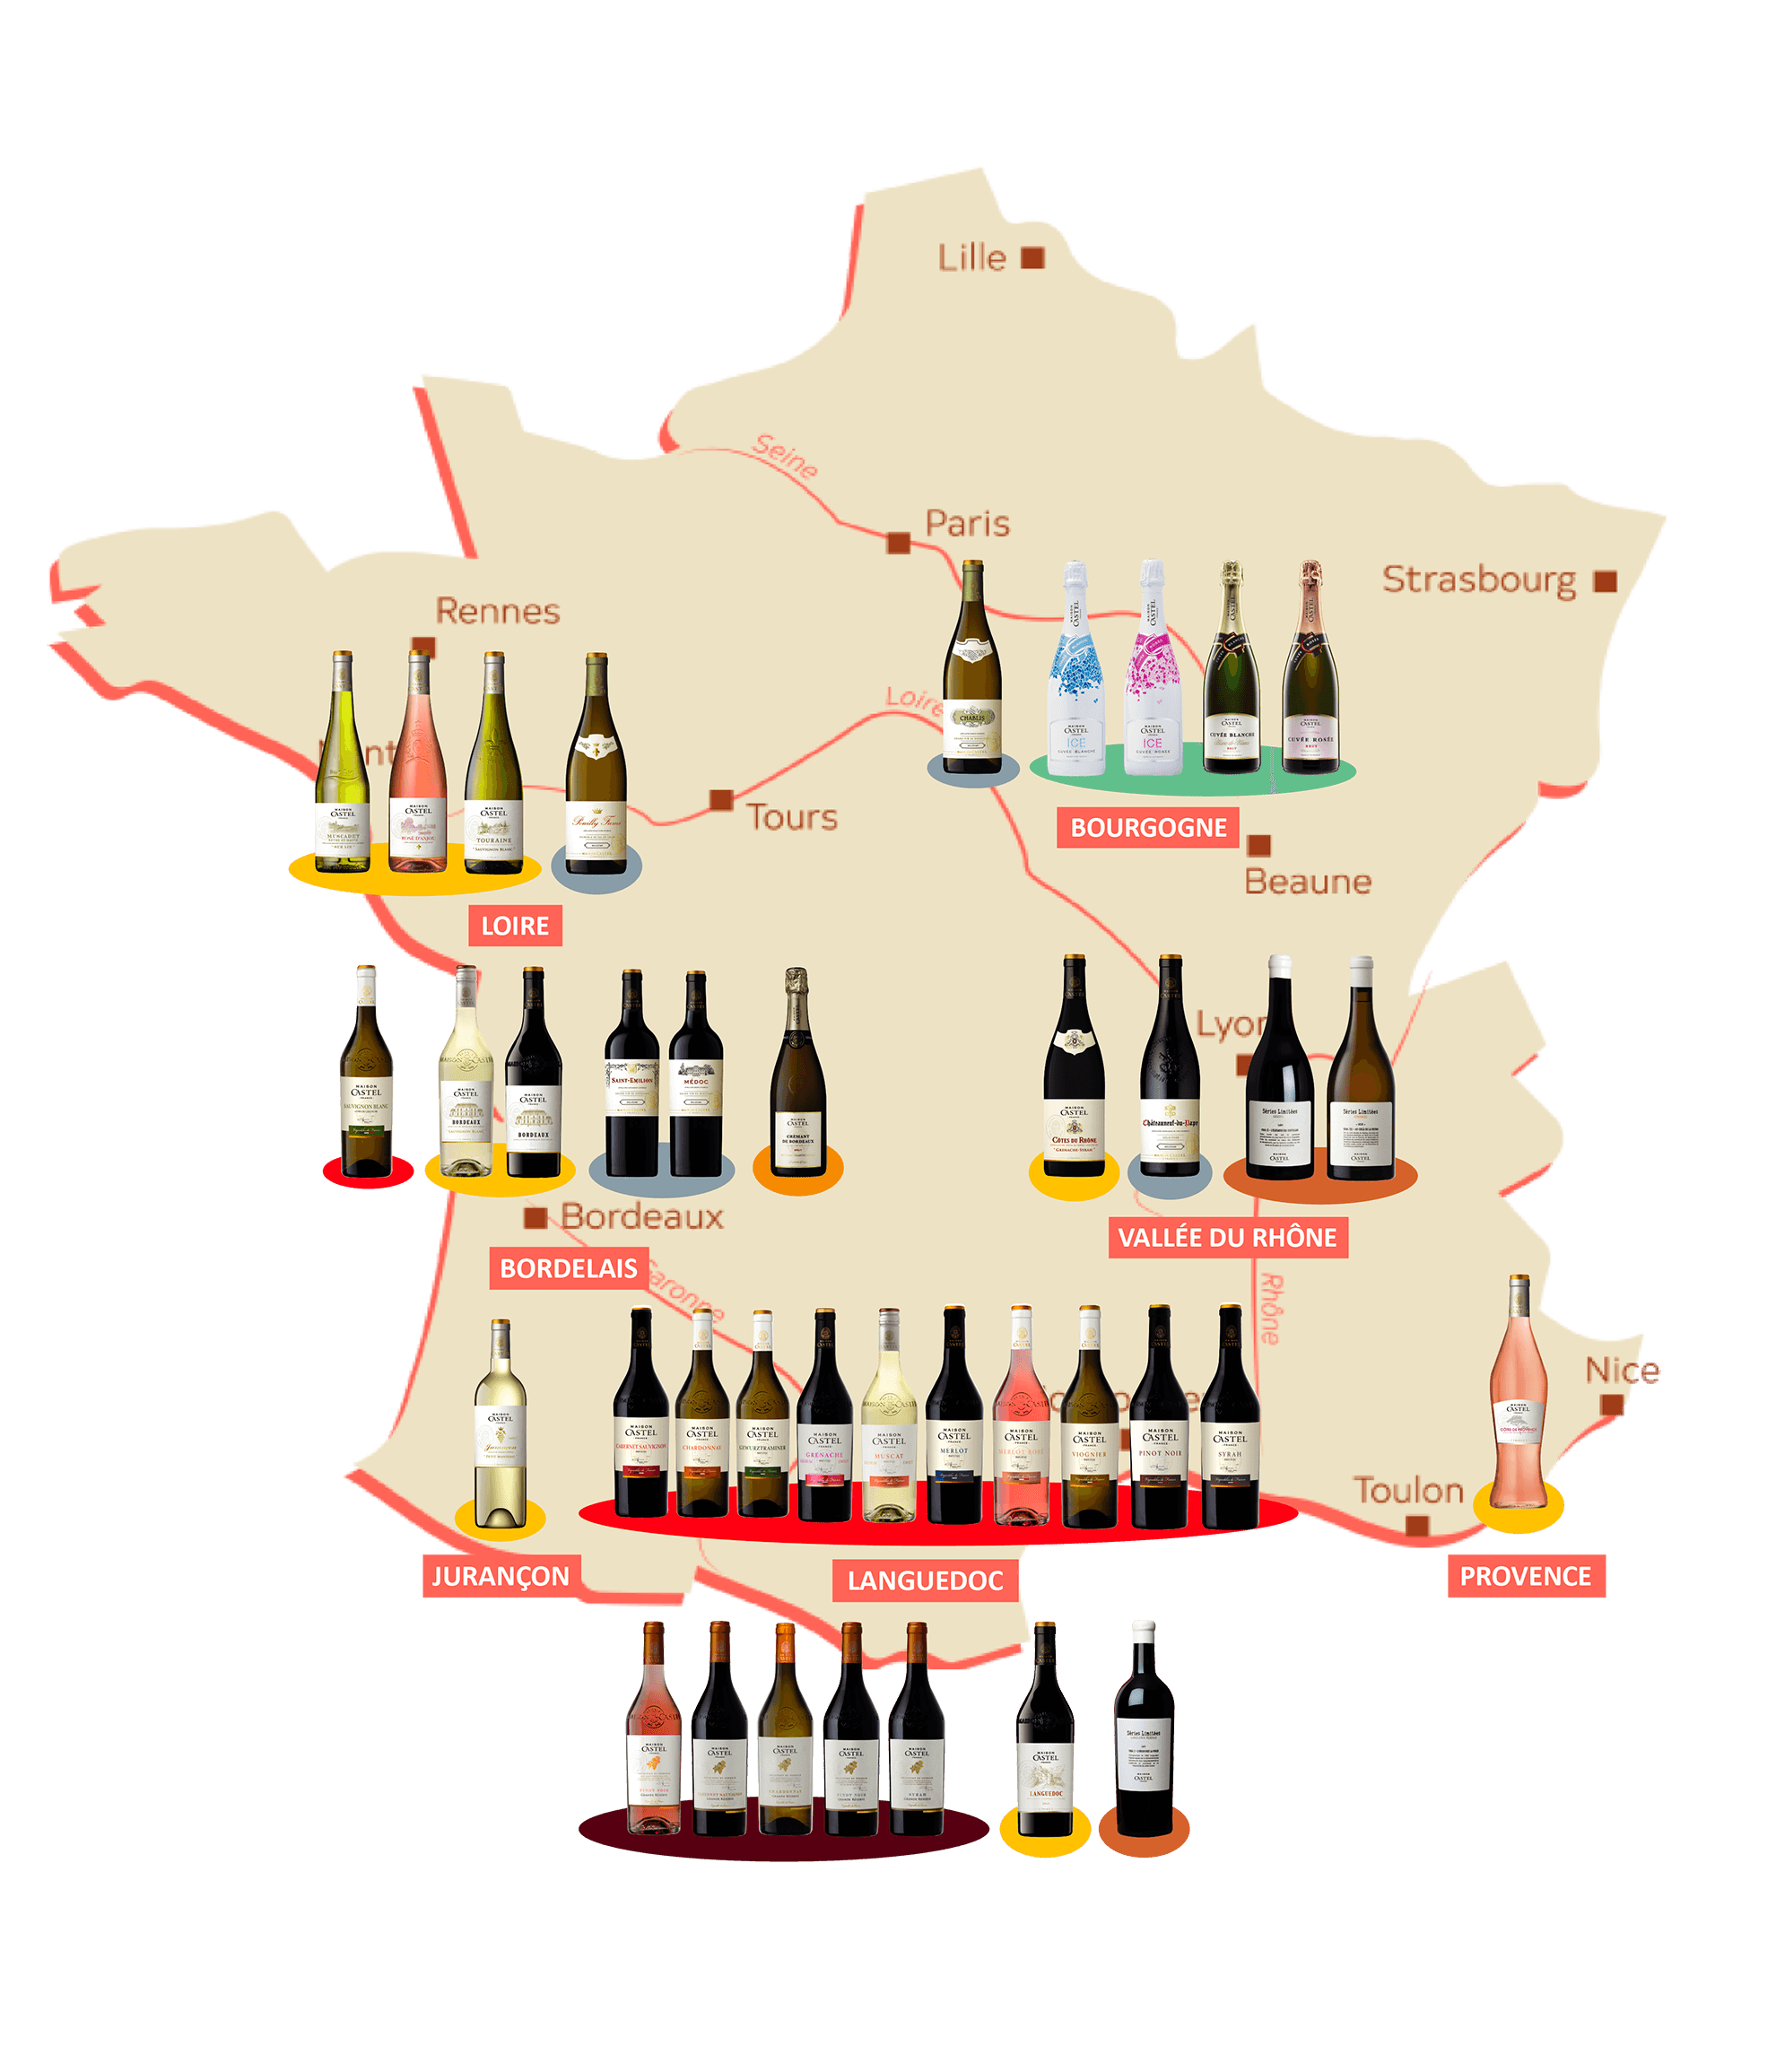 Maison Castel wine list